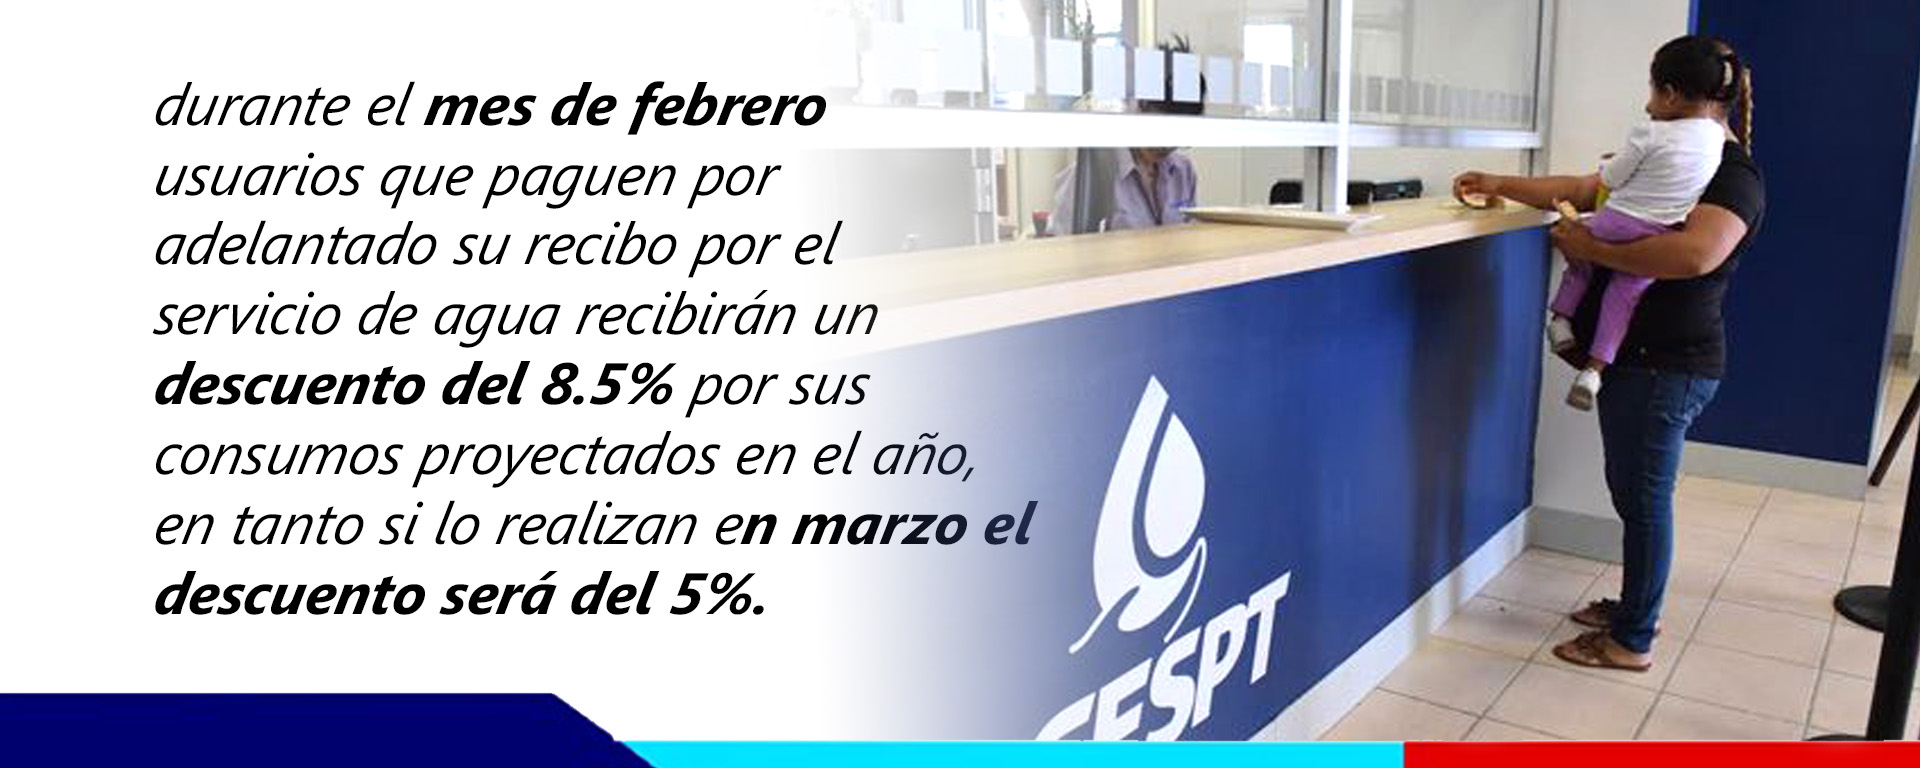 CESPT dará descuento de 8.5% en febrero